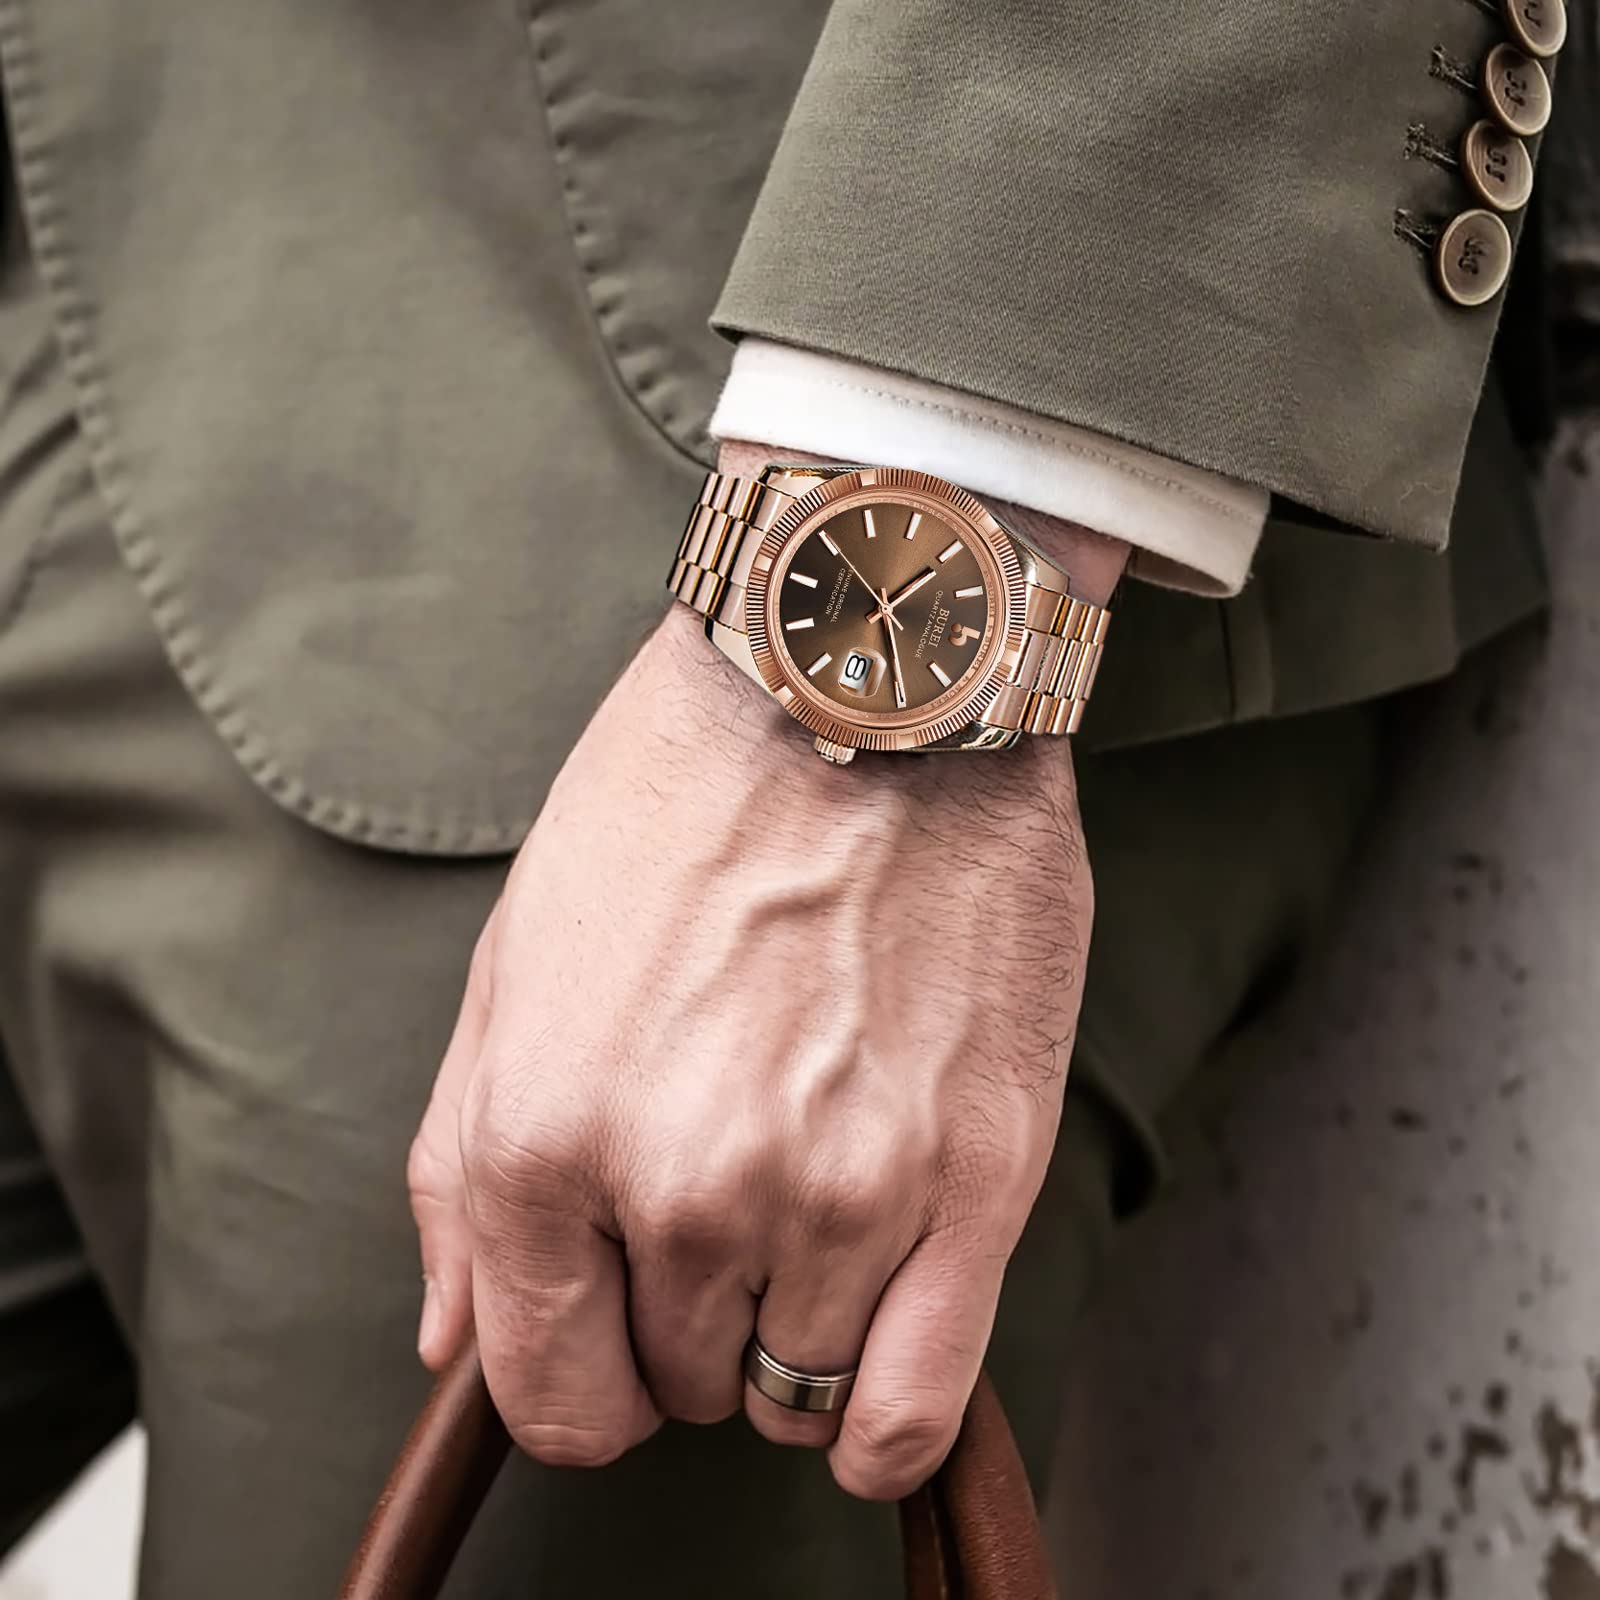 BUREI Herren Uhren Quarz Armbanduhr Datumsanzeige Saphirglas Objektiv mit Zwei Tönen Edelstahlband Uhren für Männer